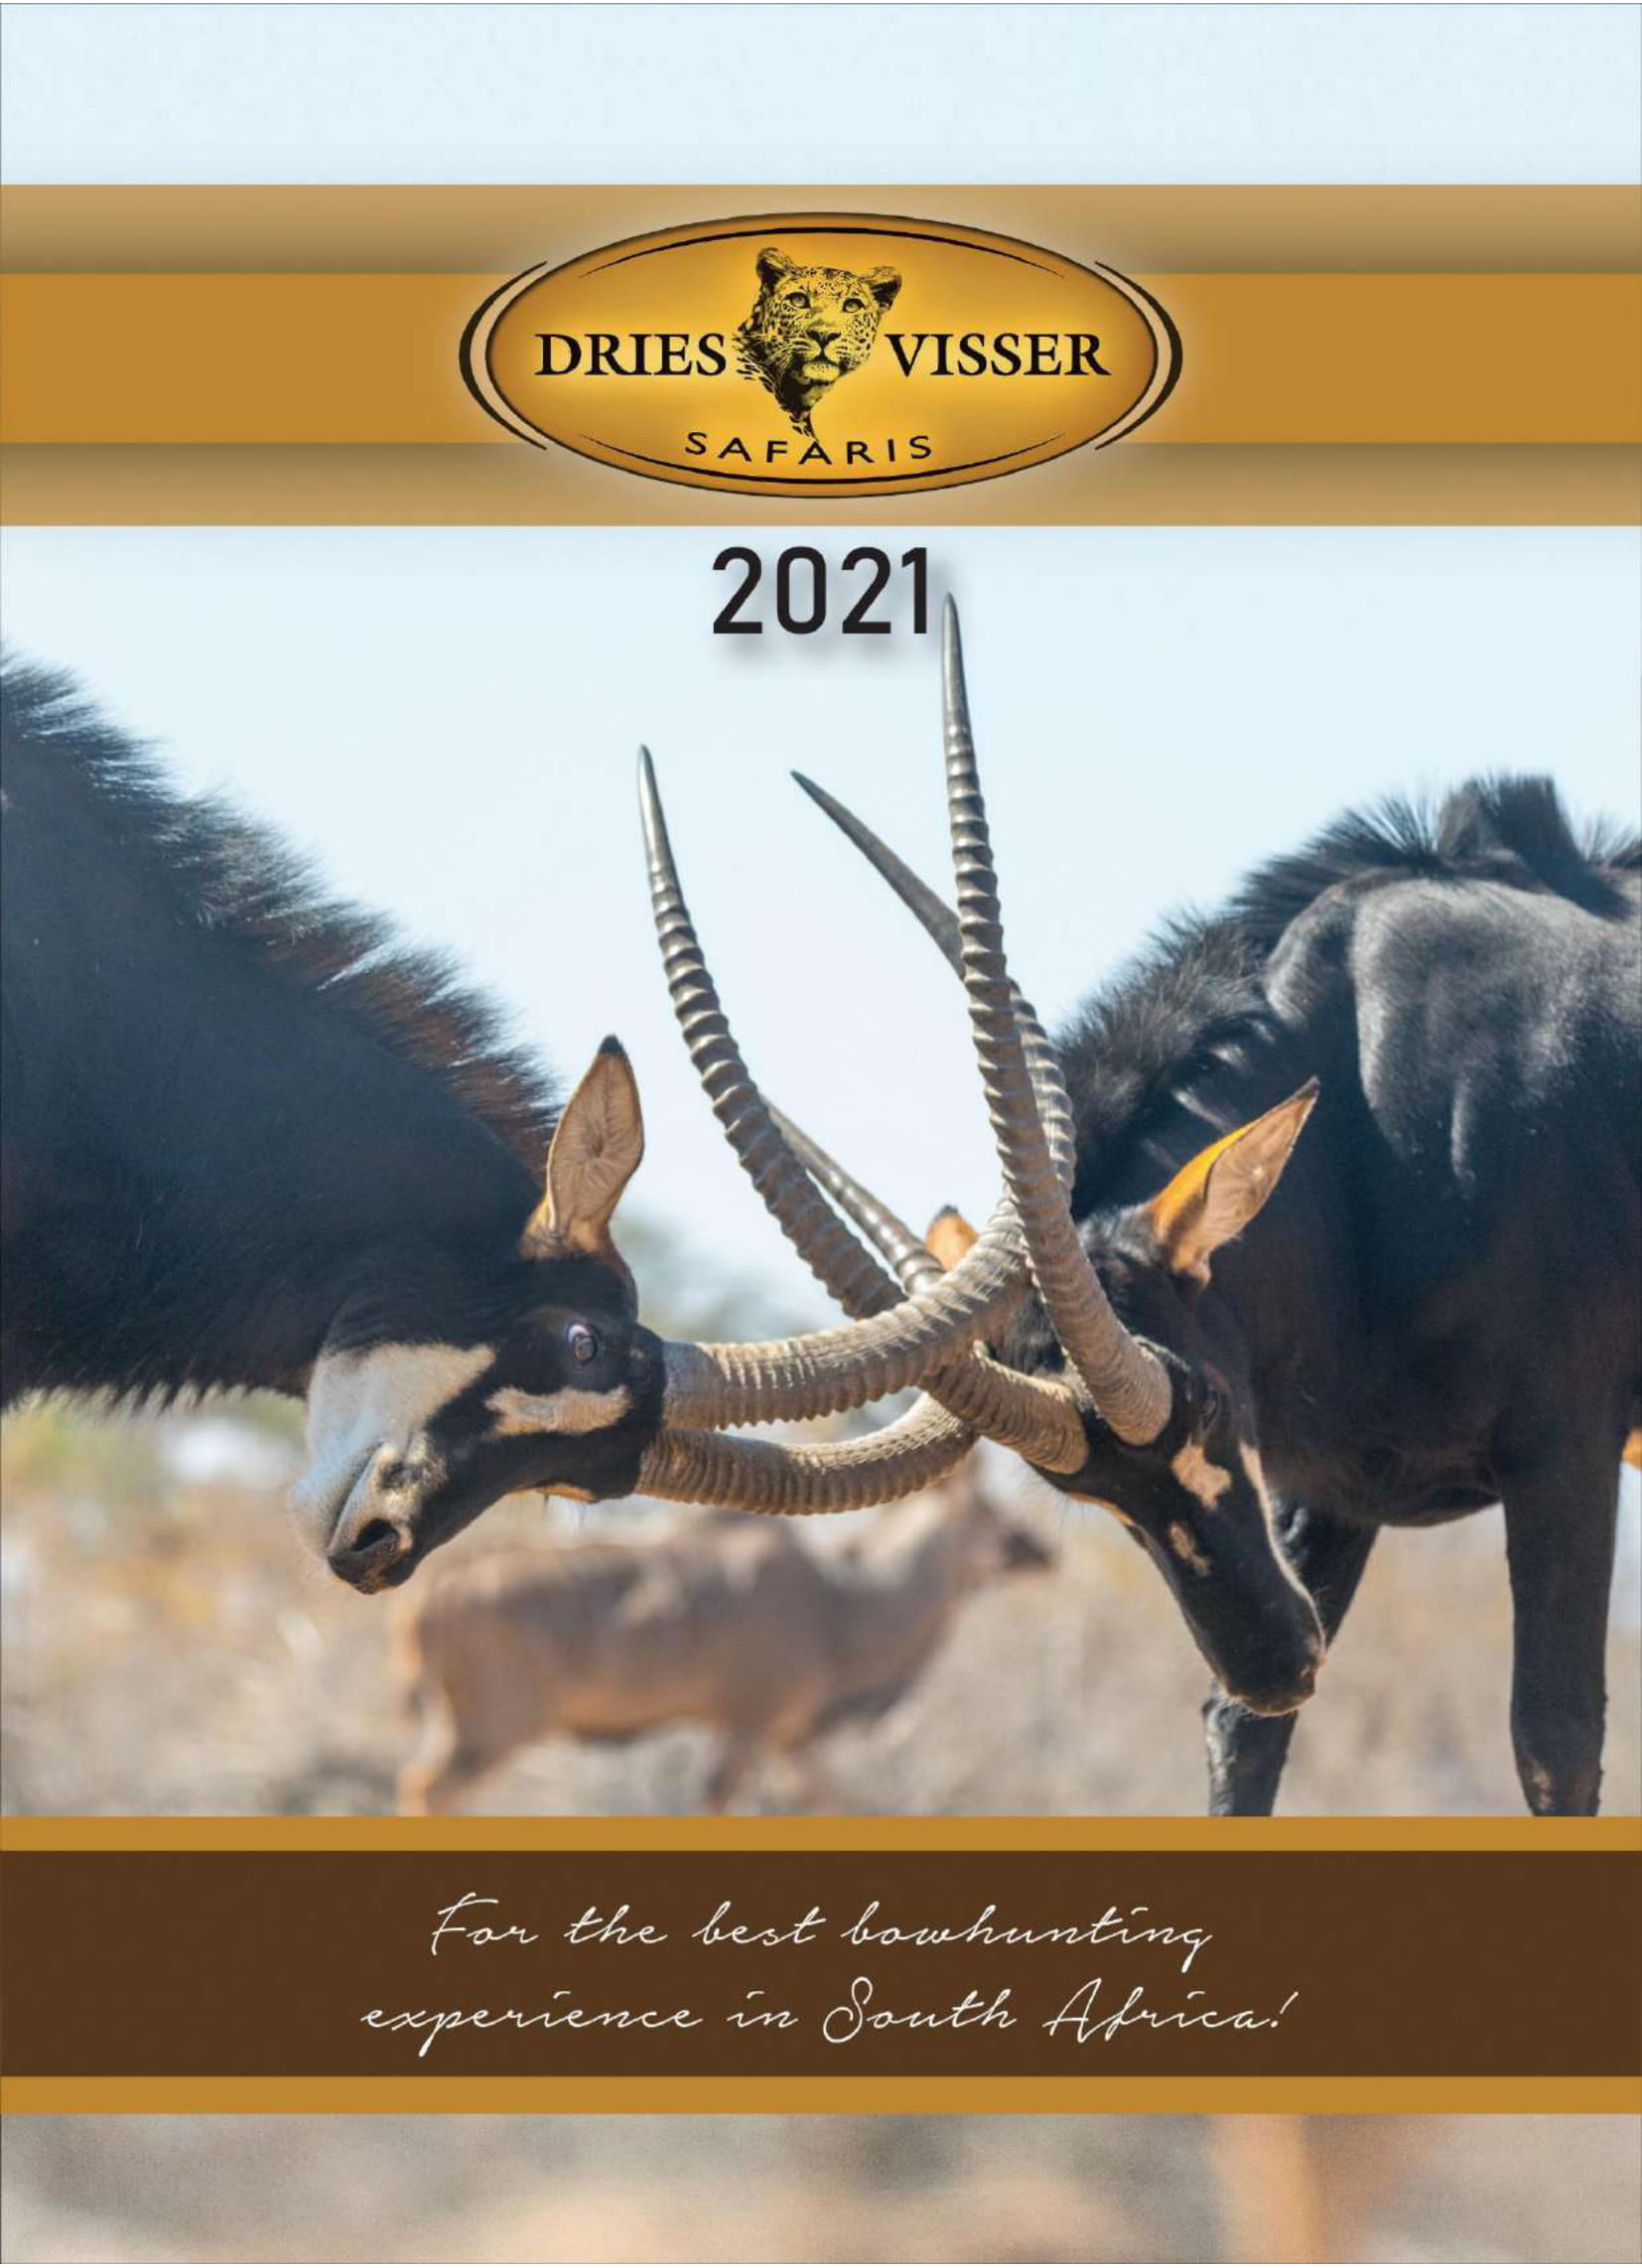 dries-visser-safaris-brochure-2021-01.jpg